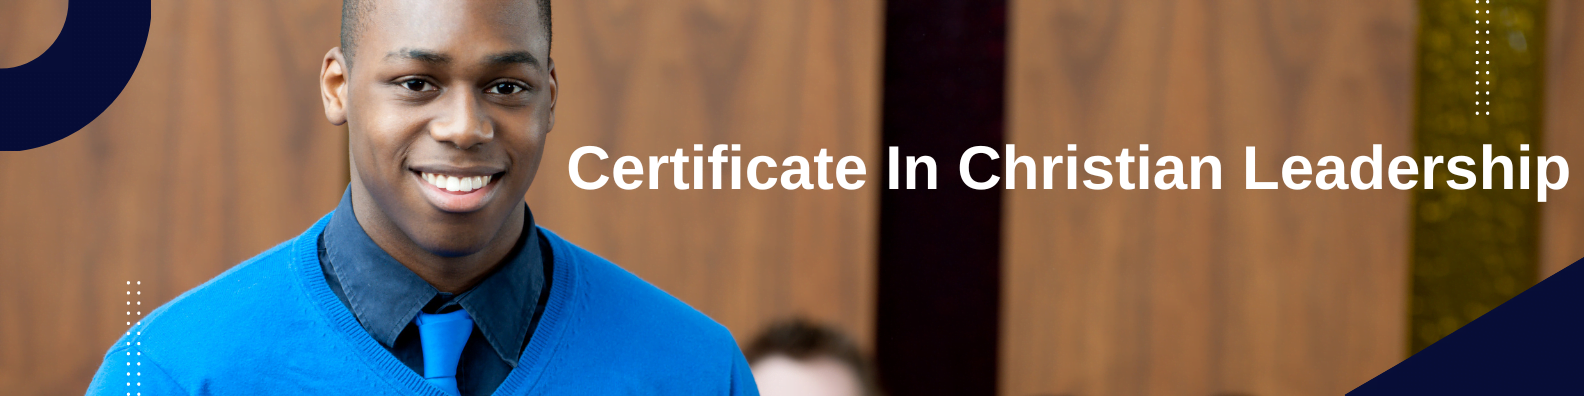 Certificate in Christian Leadership Practical Training 8 Week